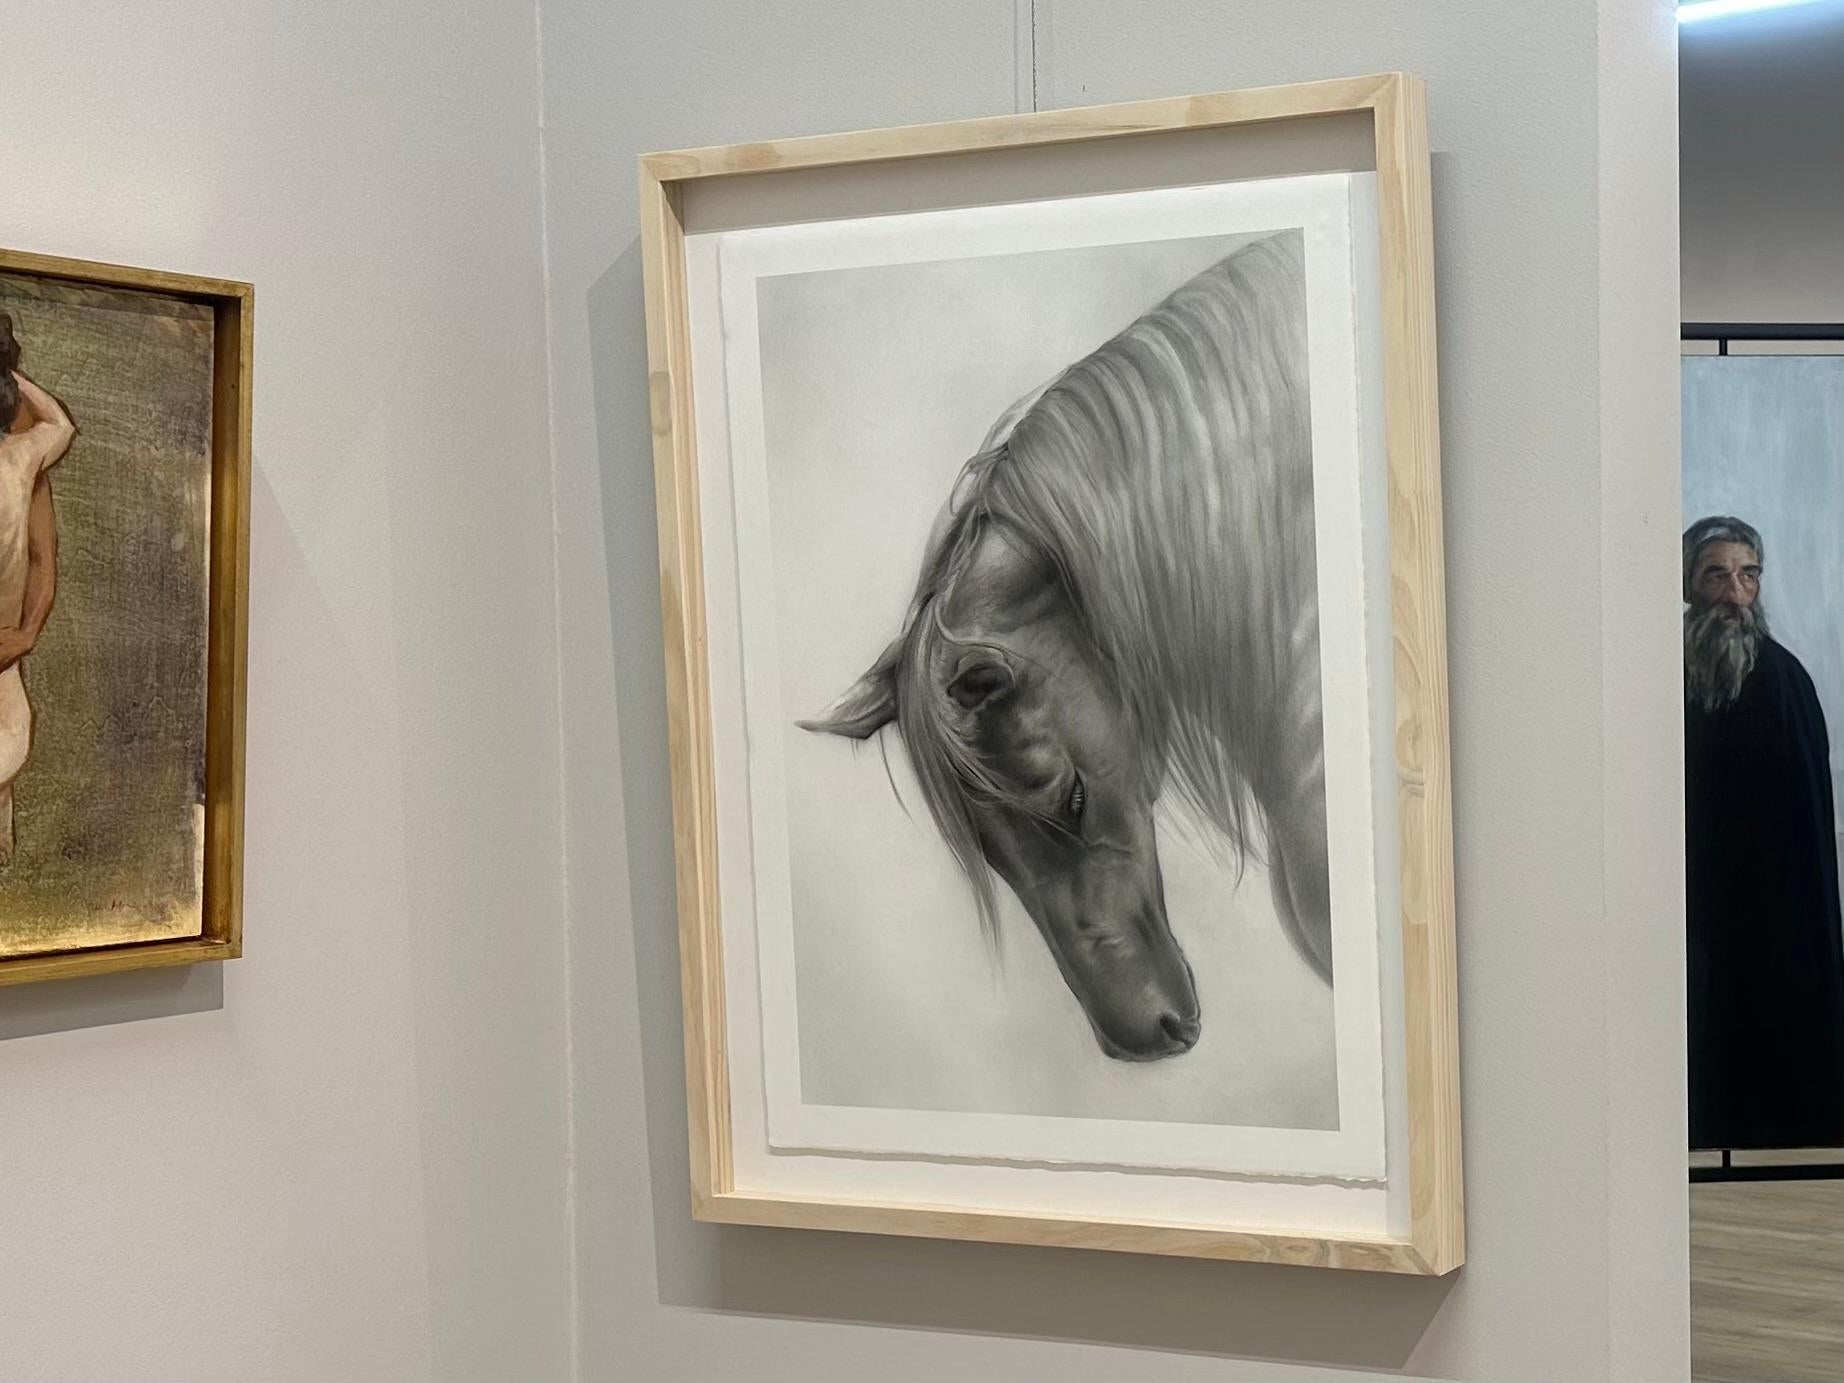 Rosanna Gaddoni
Inchino
65 x 50 cm (gerahmt im Holzrahmen mit Museumsglas)
Maße mit mitgeliefertem Rahmen: 80 x 60 cm

Die italienische Künstlerin Rosanna Gaddoni lässt sich von der Schönheit der Menschen und der Natur inspirieren. Mit ihrem weichen